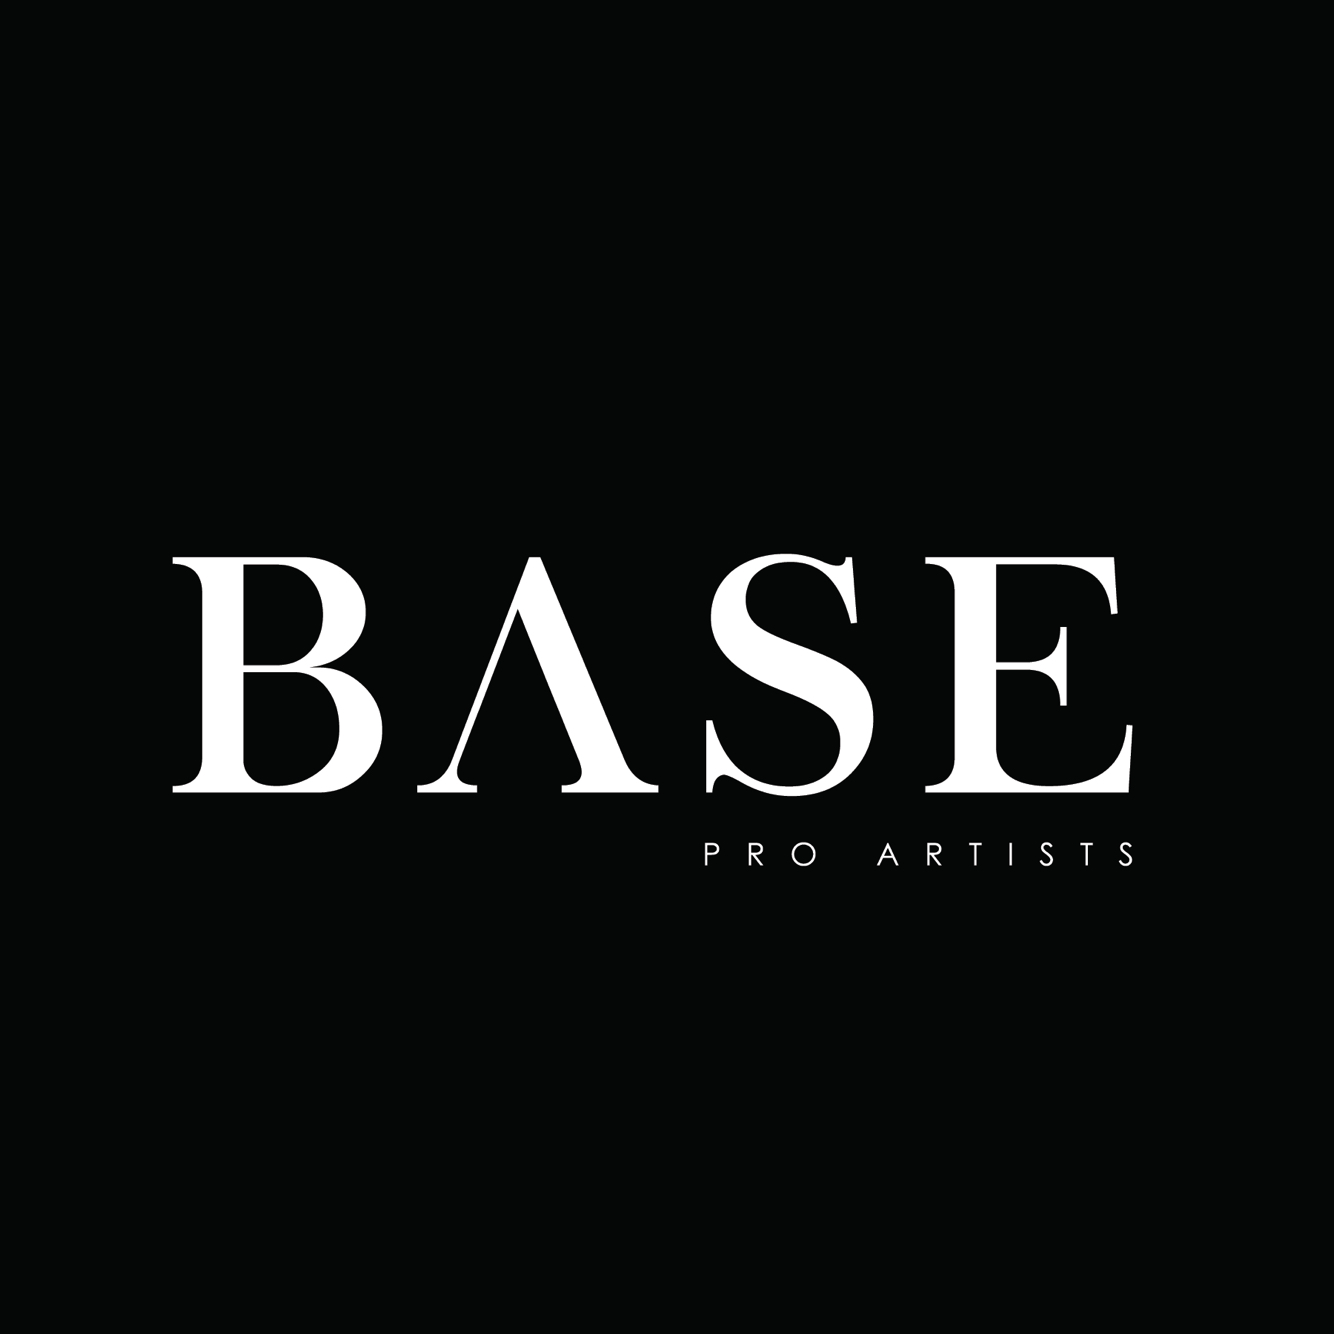 BASE Pro